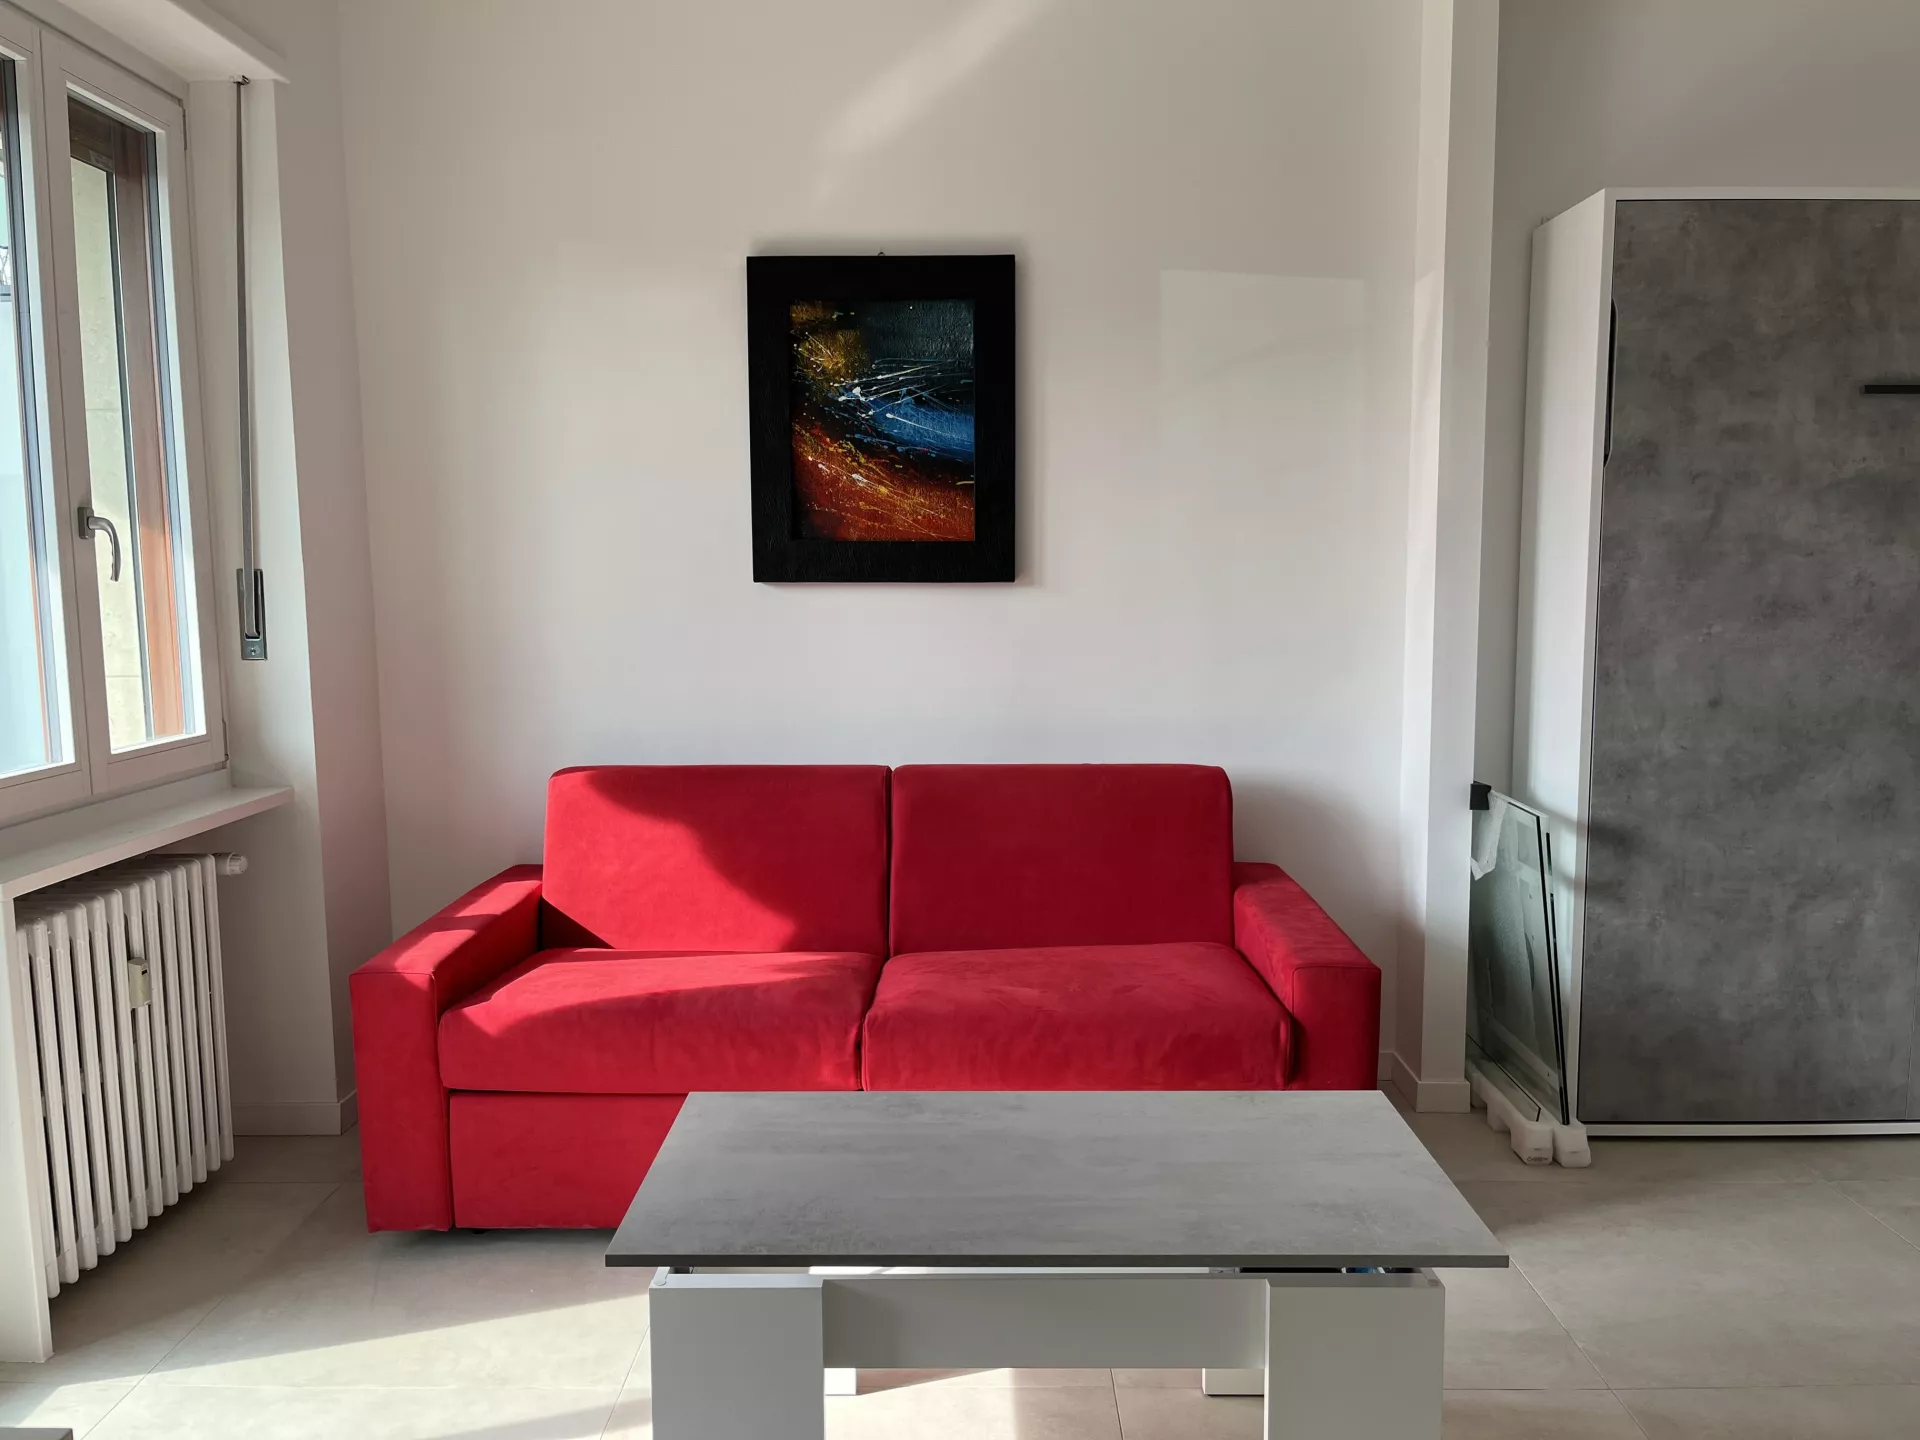 Immagine per Appartamento in affitto a Saluzzo corso Roma